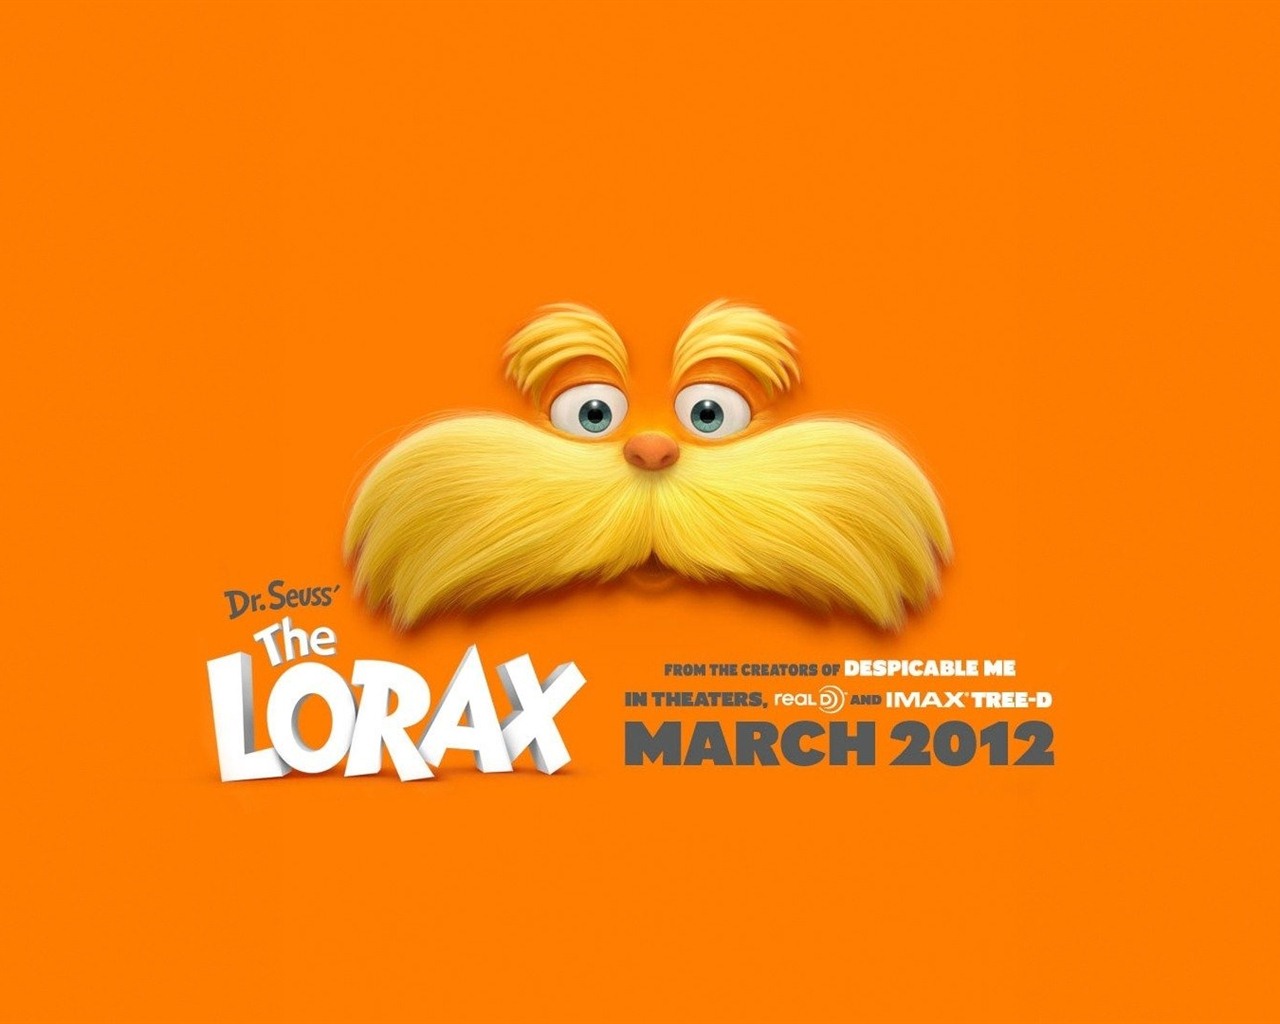 Dr. Seuss The Lorax 老雷斯的故事 高清壁纸13 - 1280x1024